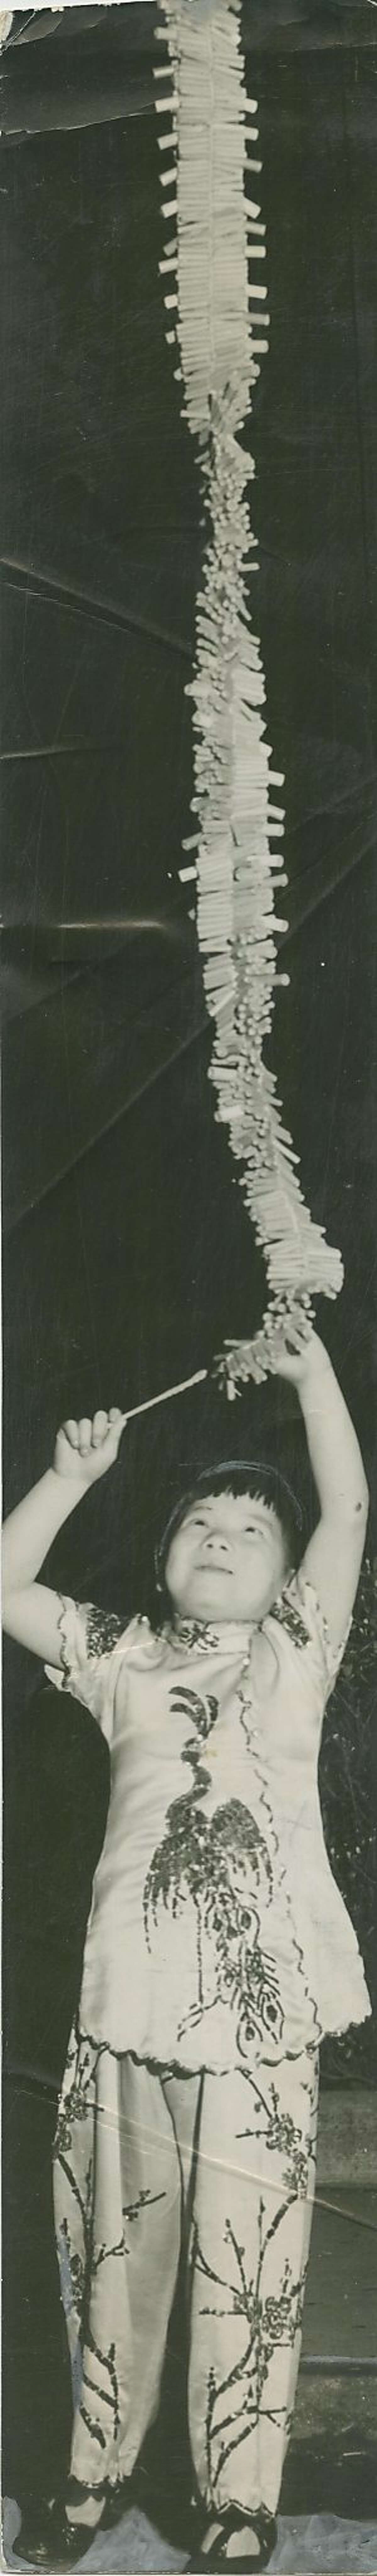 孩子点亮了一长串鞭炮在唐人街饭碗游行和拍卖,1940年2月10日